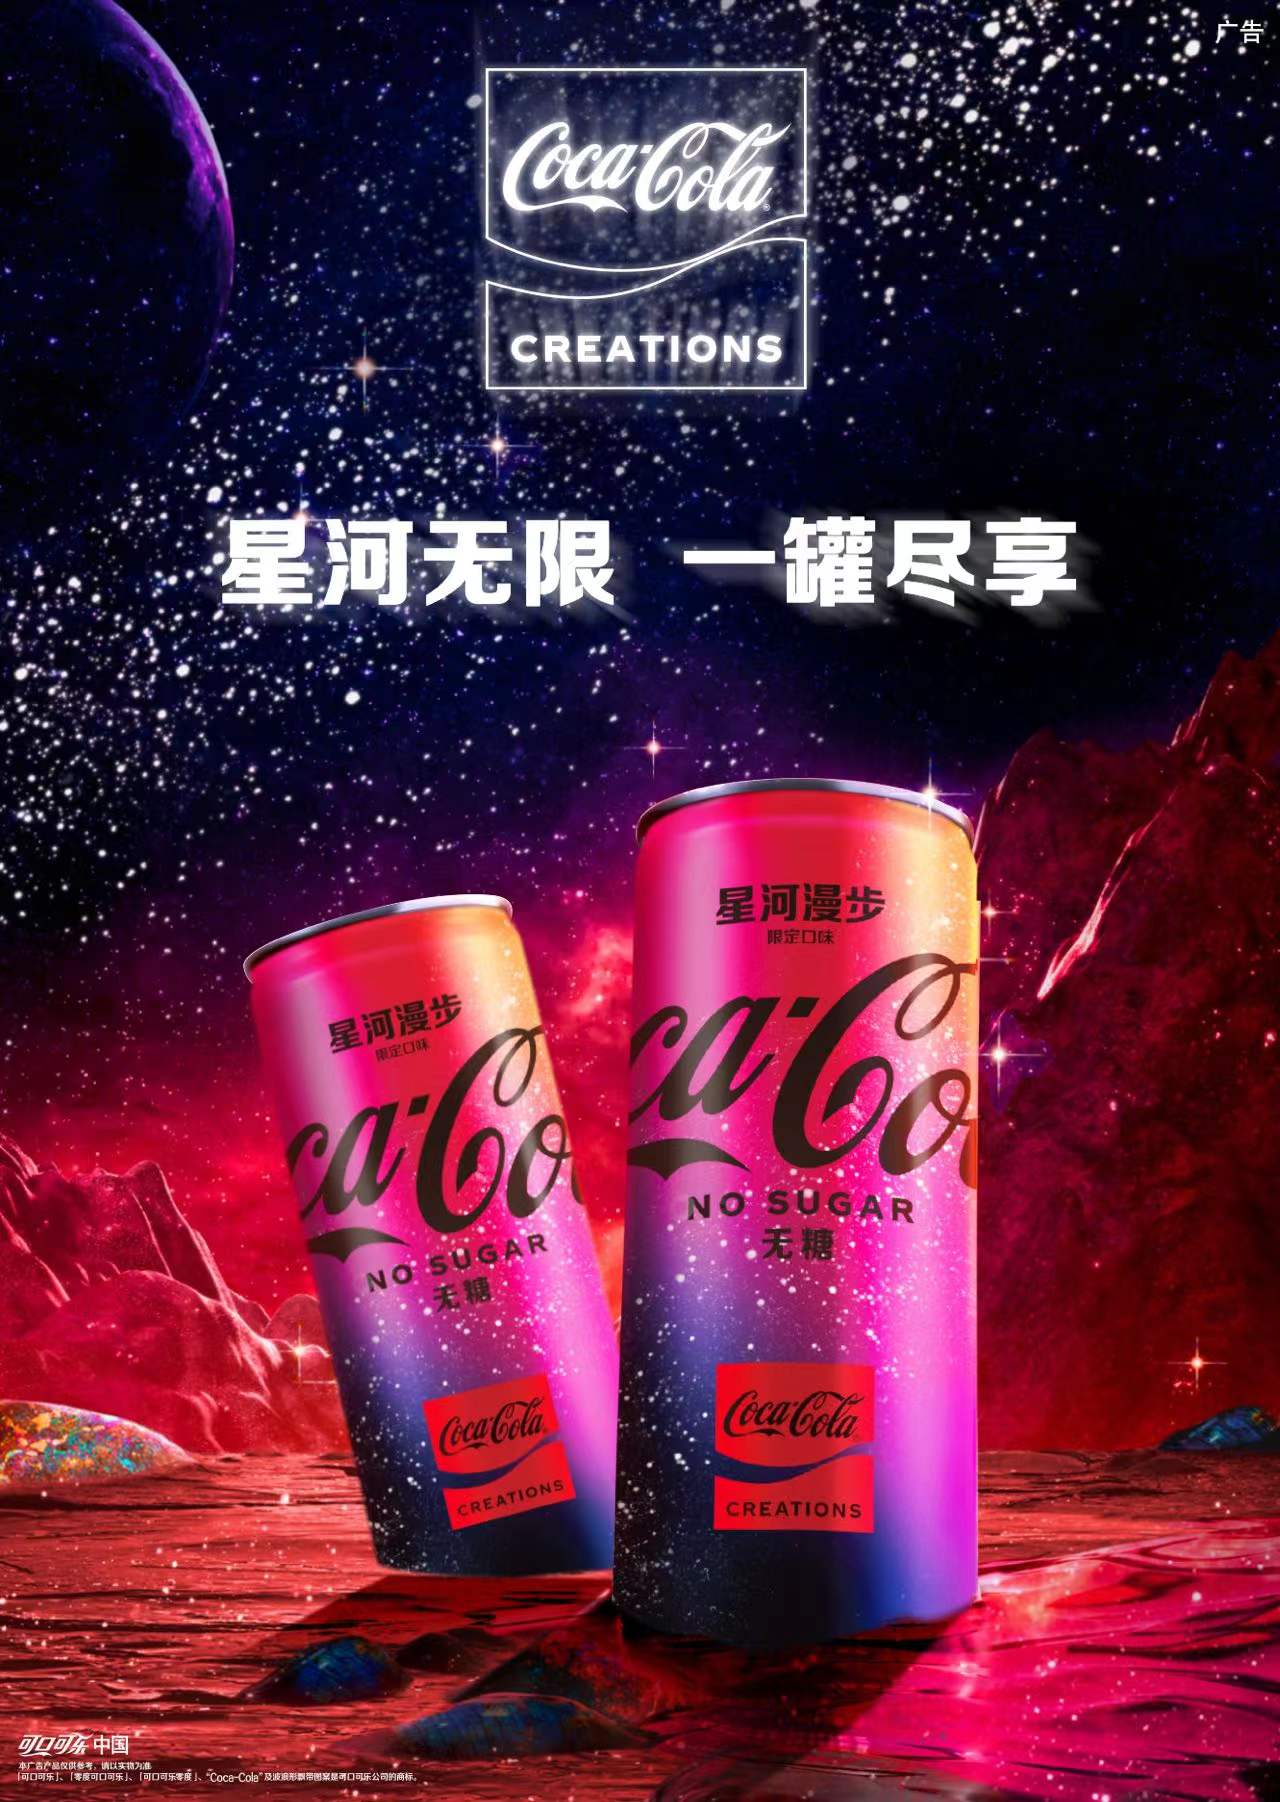 【可口可乐】发布首款以太空为灵感的限定产品“星河漫步”（Coca-Cola Starlight）.jpg